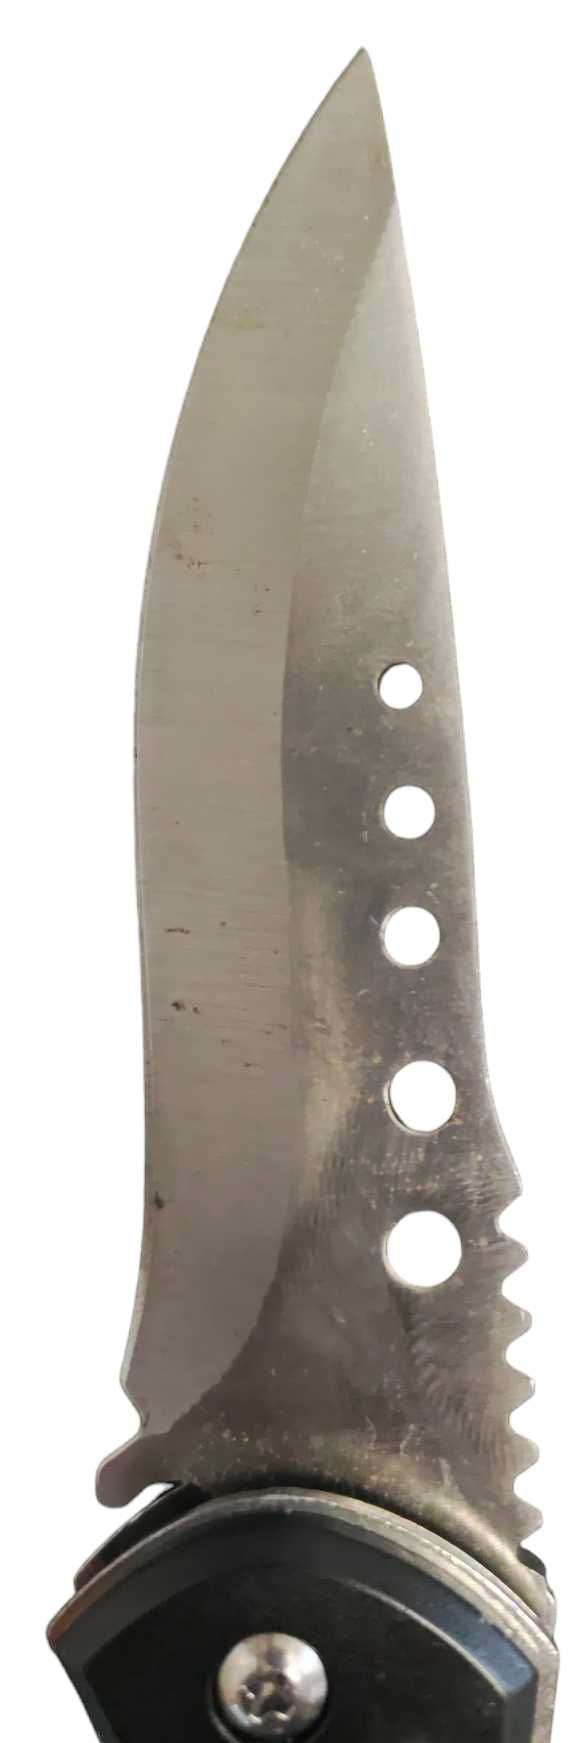 Nóż sprężynowy stainlles steel survival / Nowy Lombard / TG